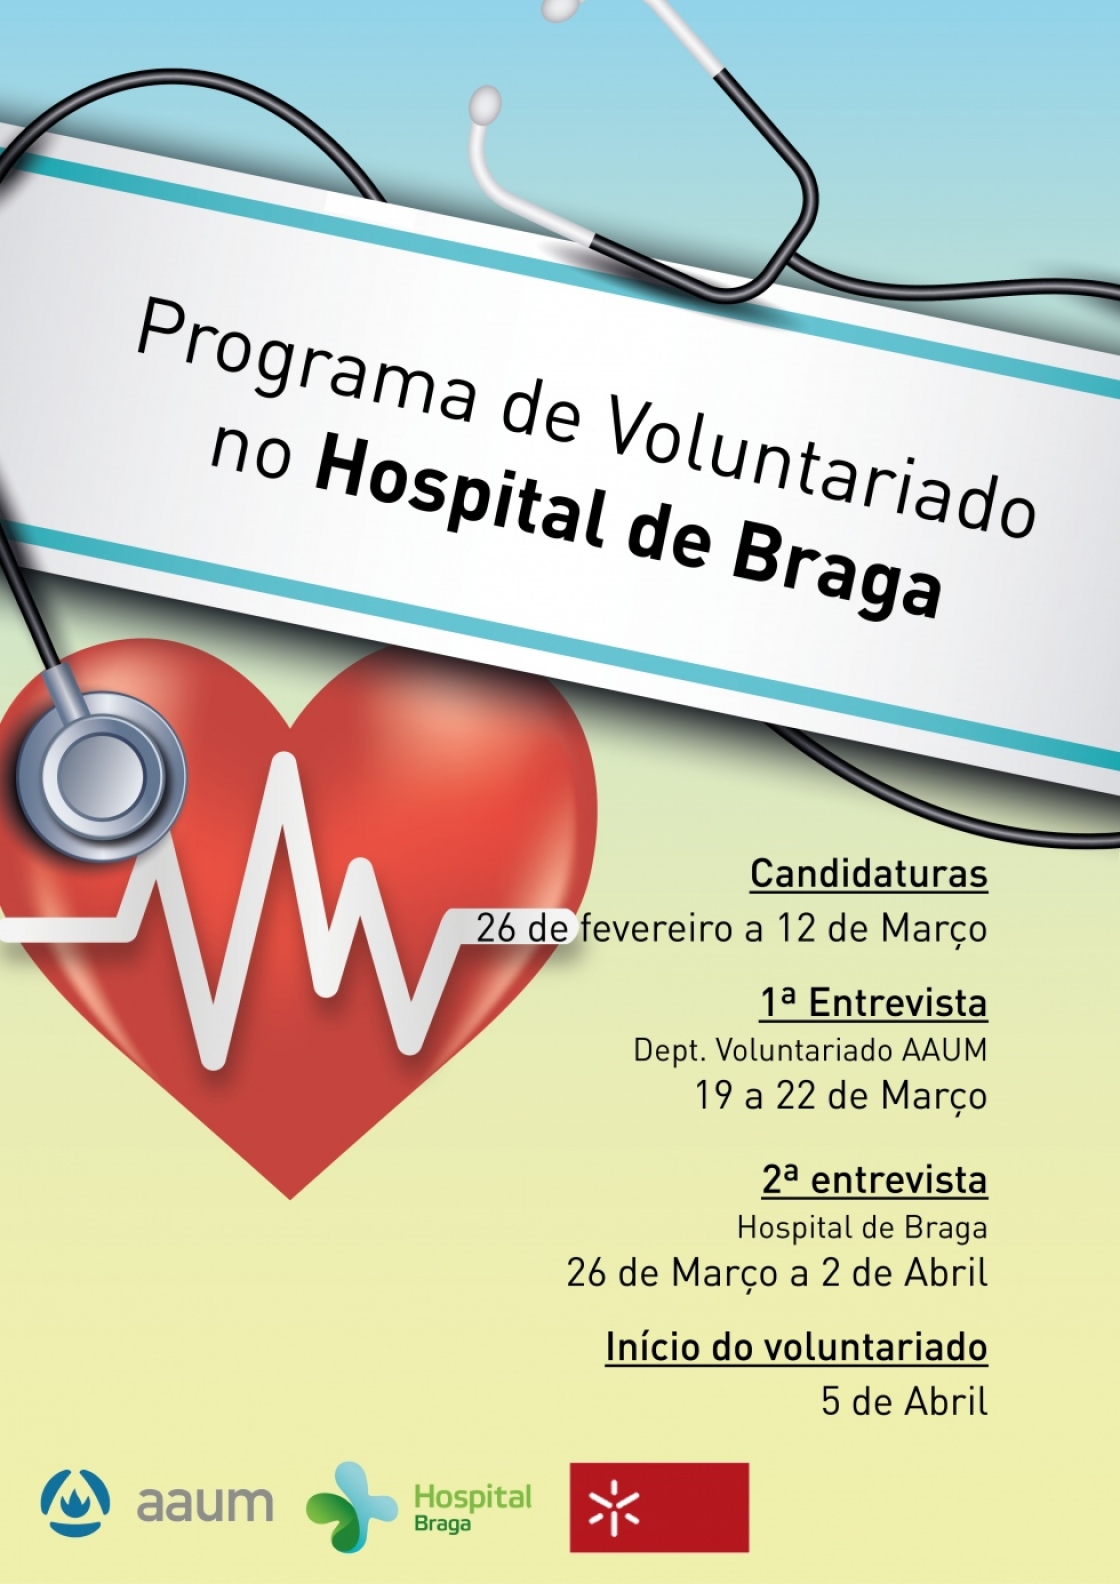 AAUM e Hospital de Braga novamente juntos em projeto de voluntariado